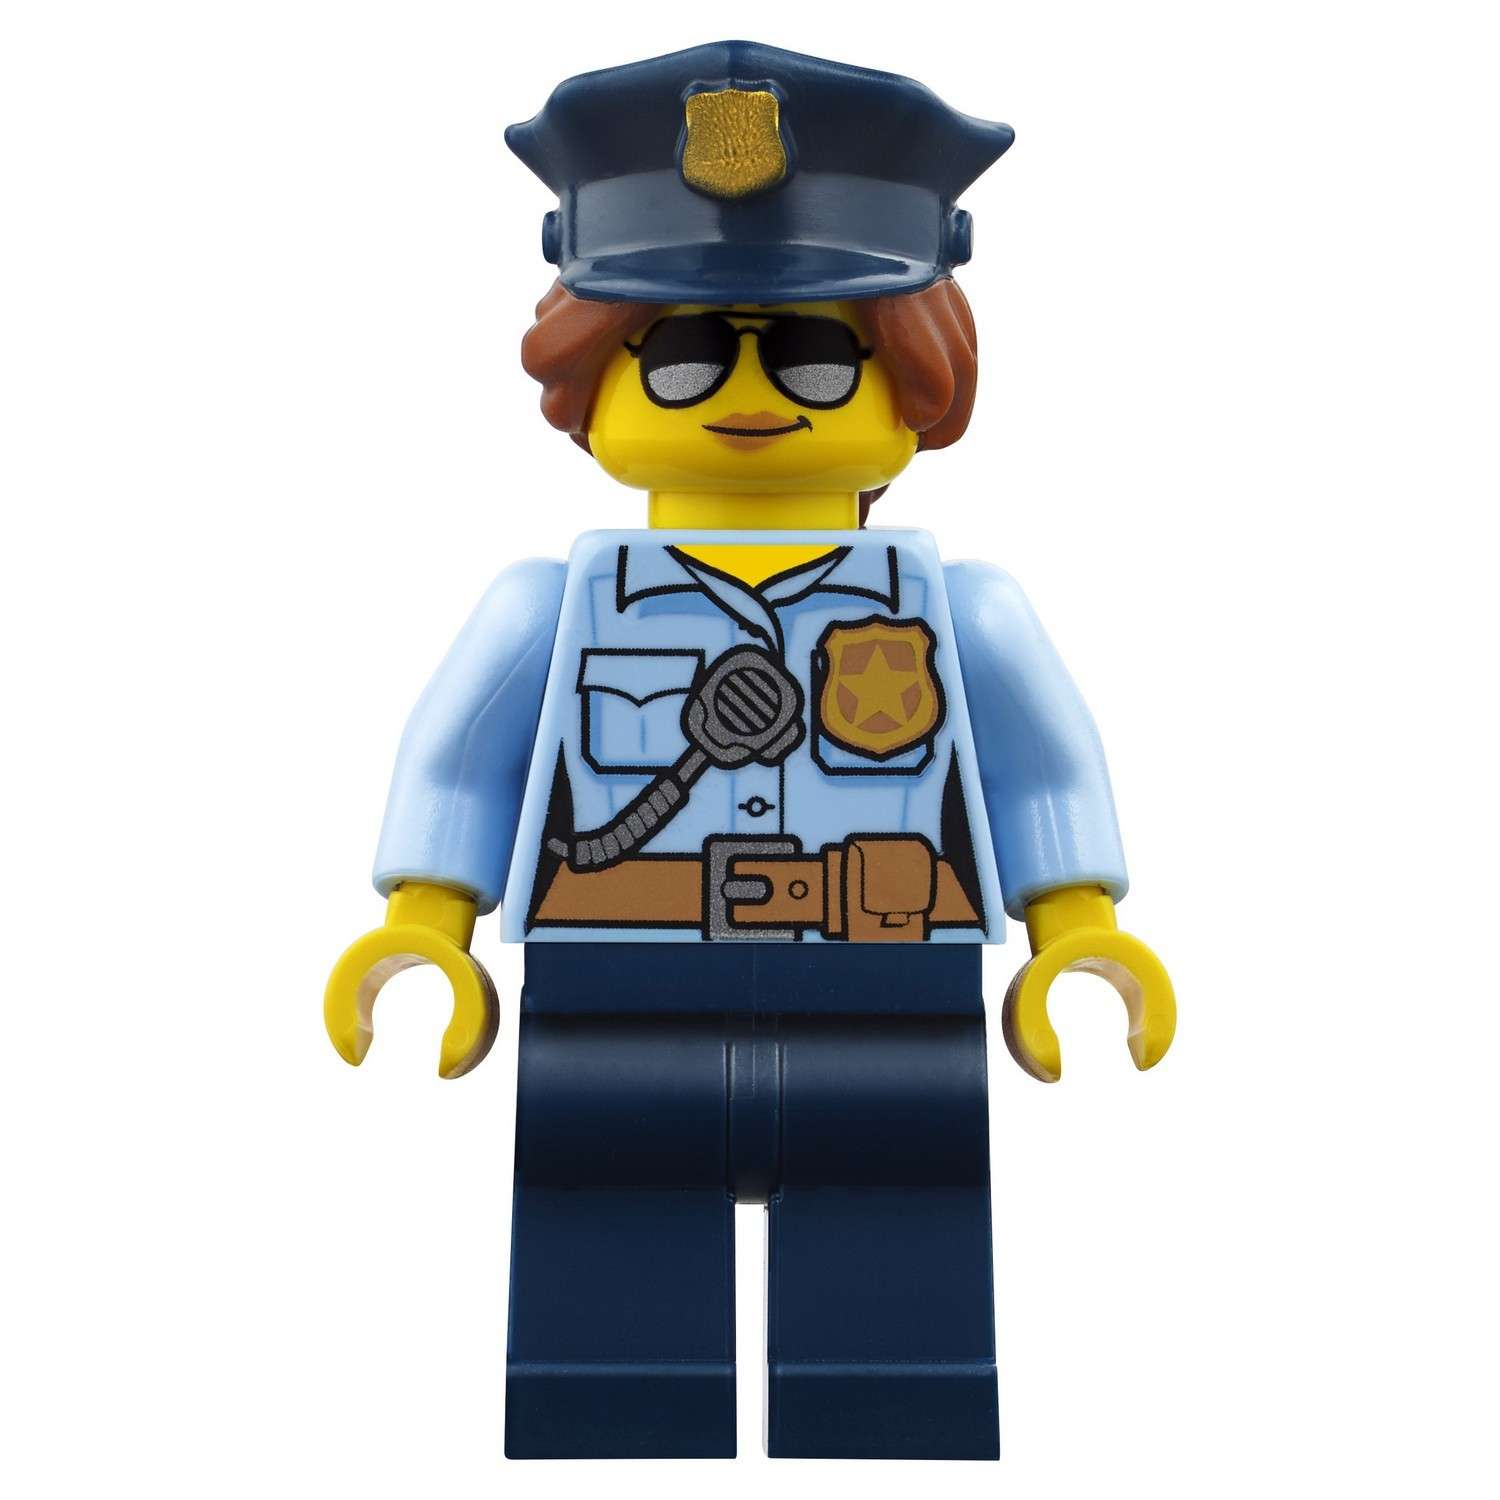 Конструктор LEGO City Police Ограбление на бульдозере (60140) - фото 26